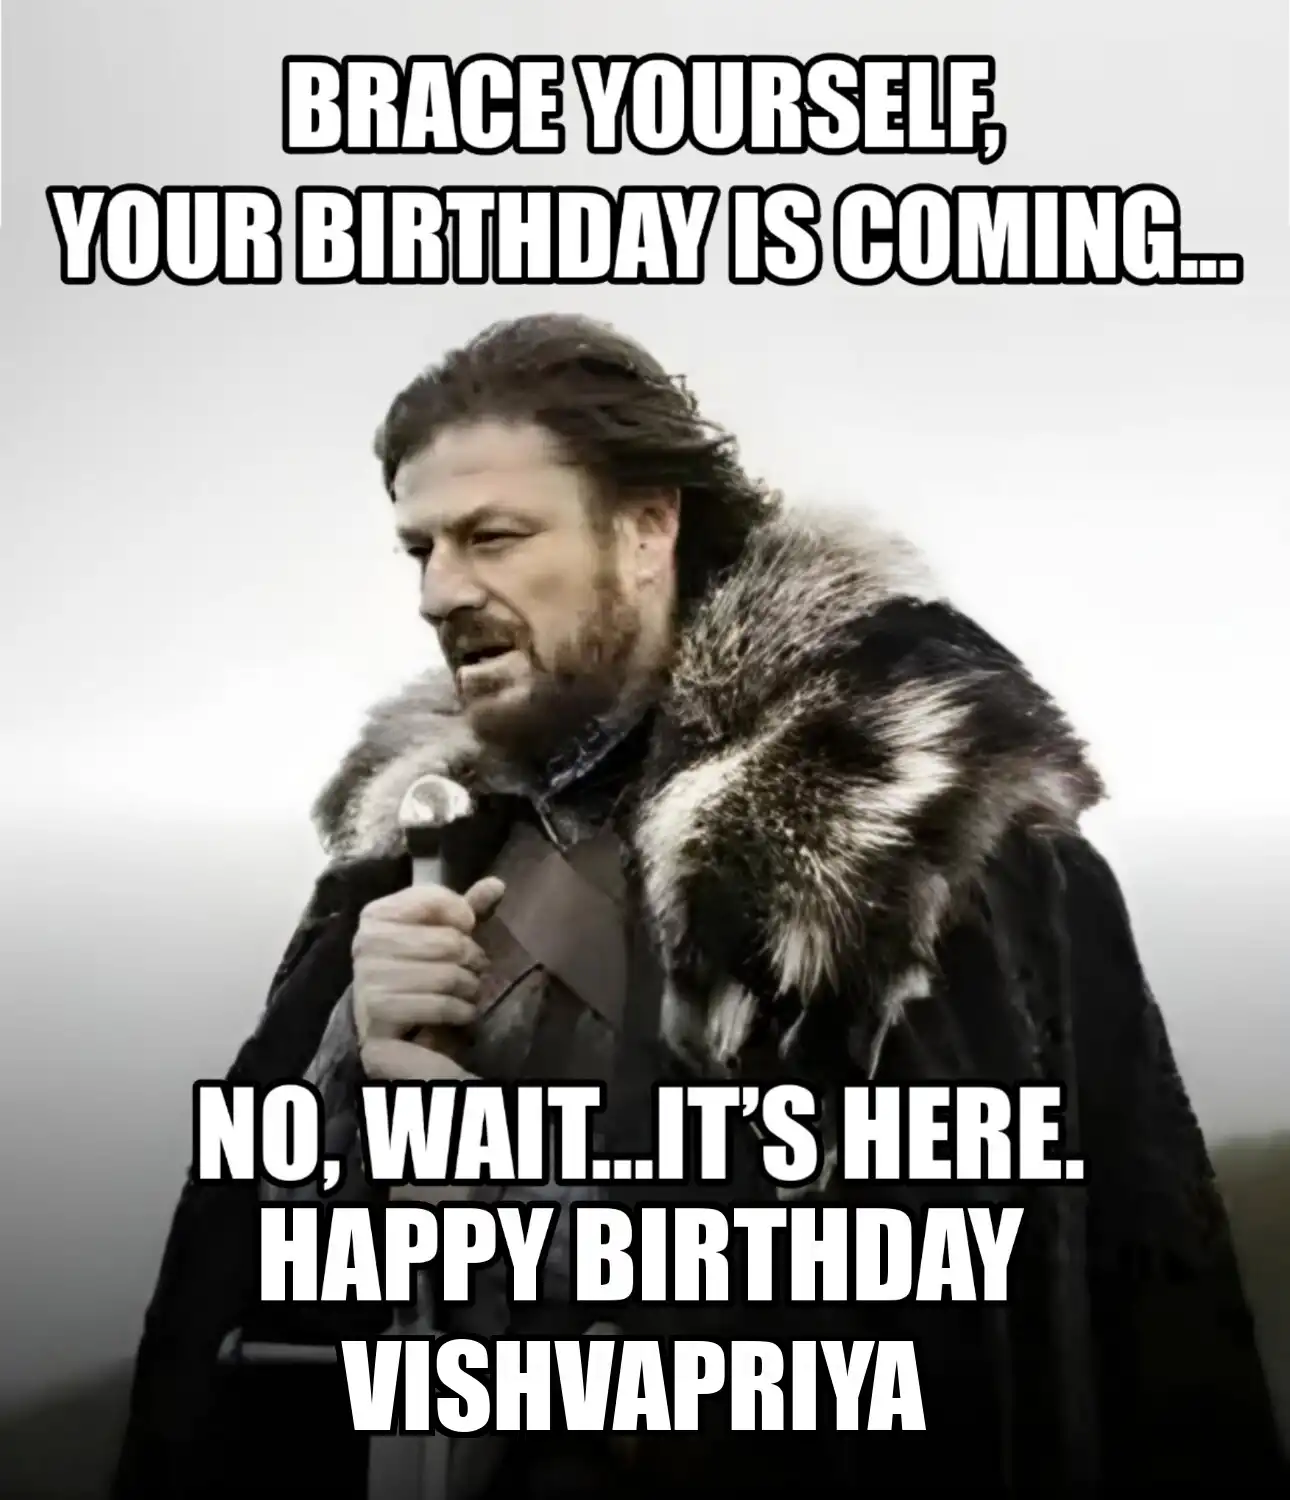 Happy Birthday Vishvapriya Brace Yourself Your Birthday Is Coming Meme